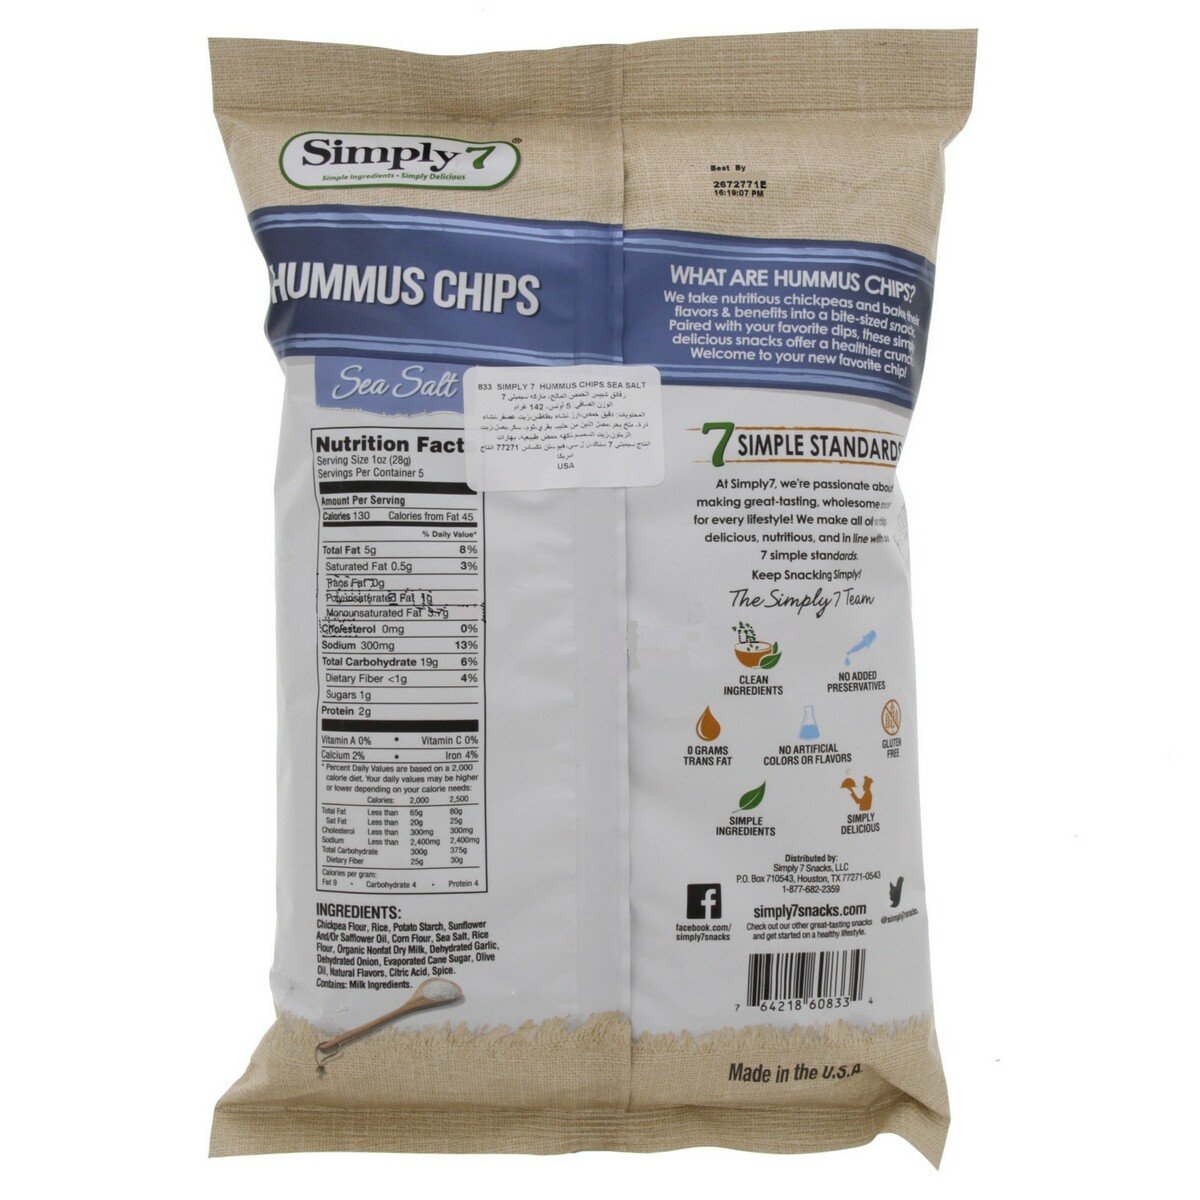 Simply 7 Hummus Chips Seasalt 130 g